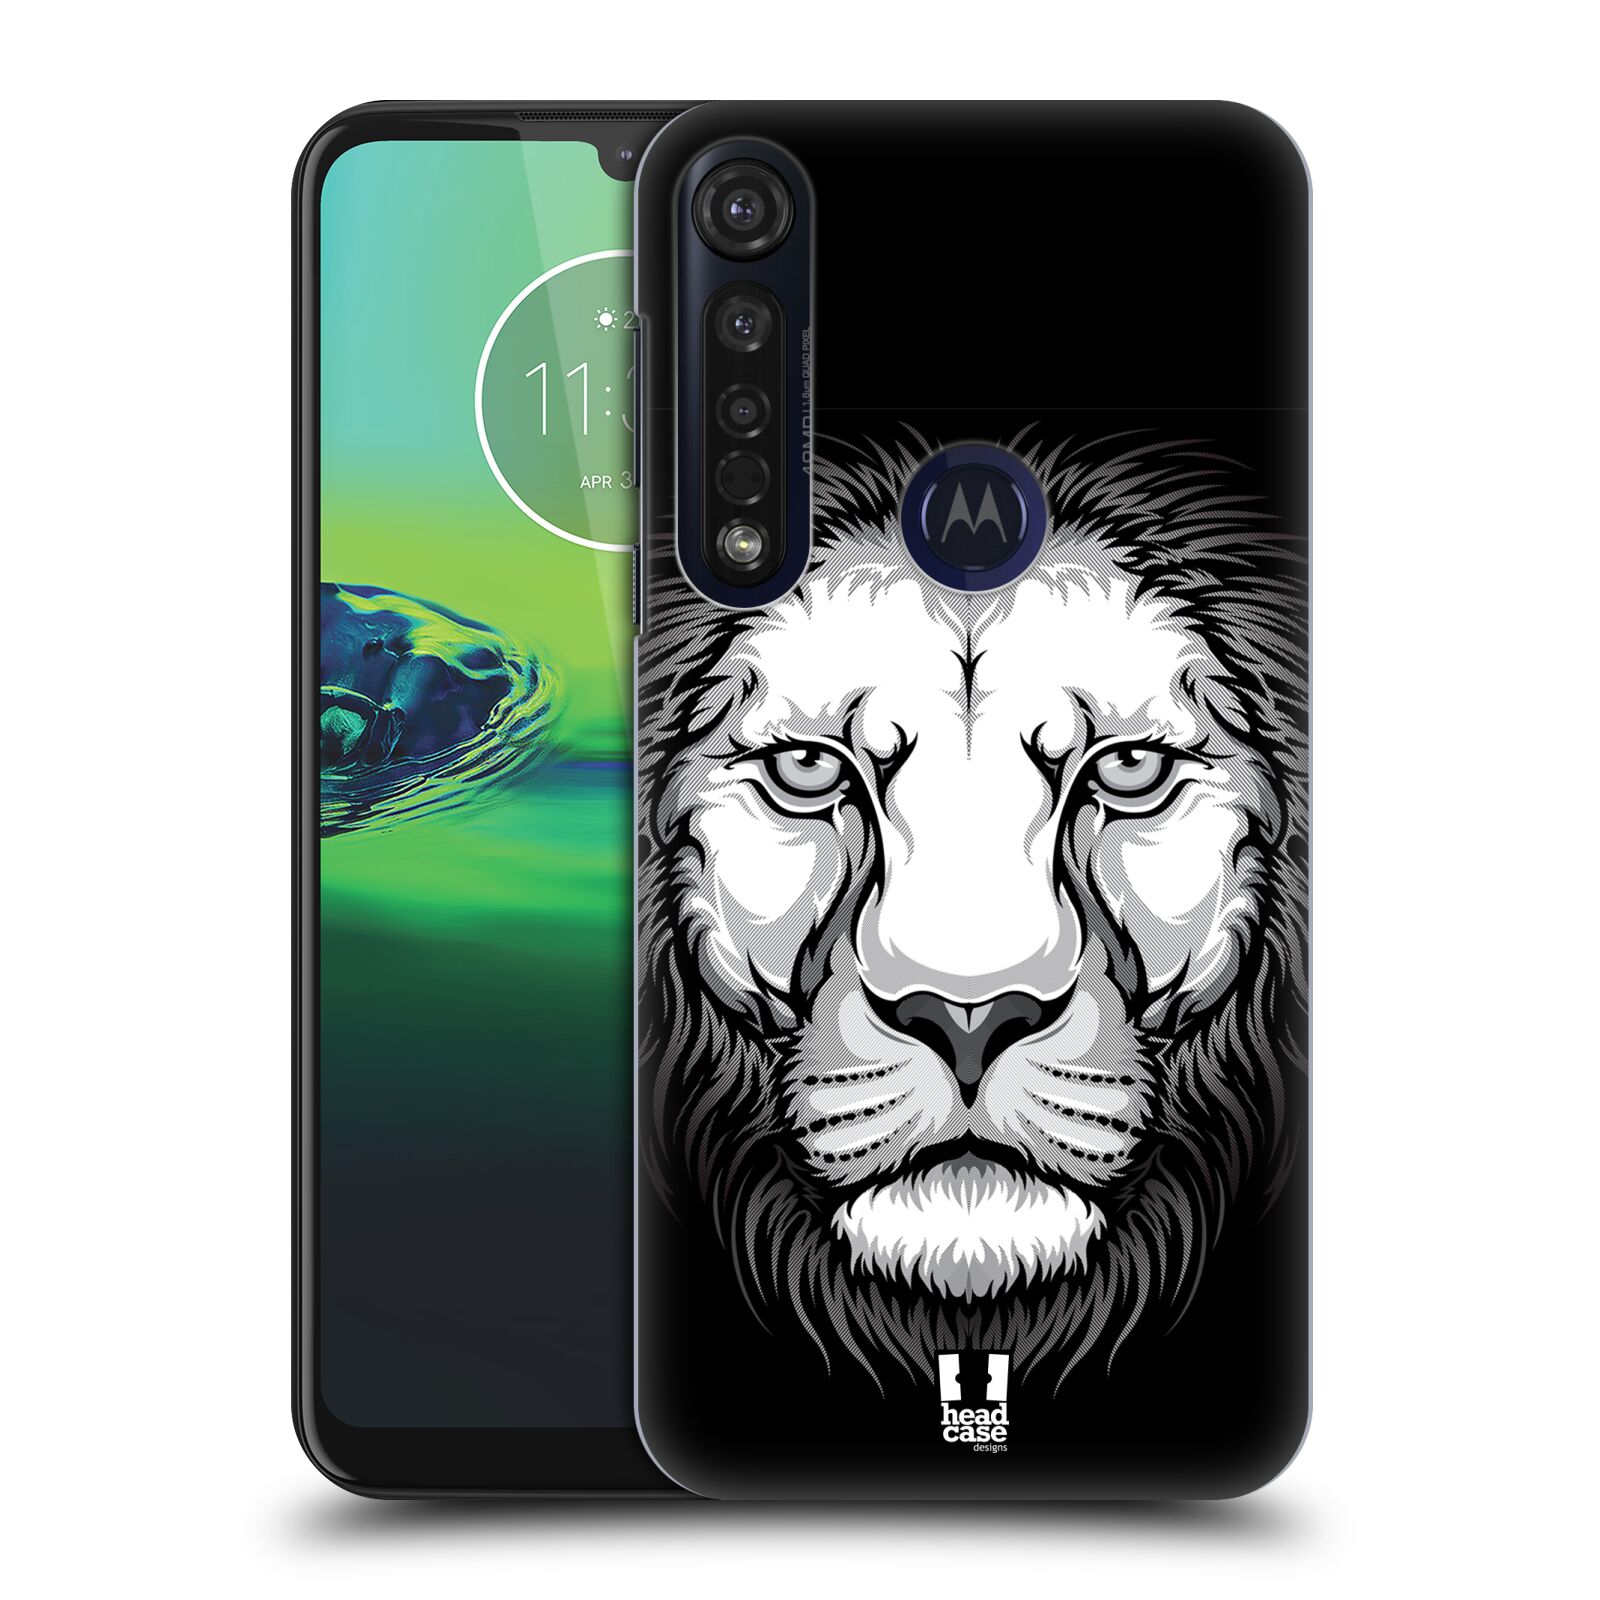 Pouzdro na mobil Motorola Moto G8 PLUS - HEAD CASE - vzor Zvíře kreslená tvář lev